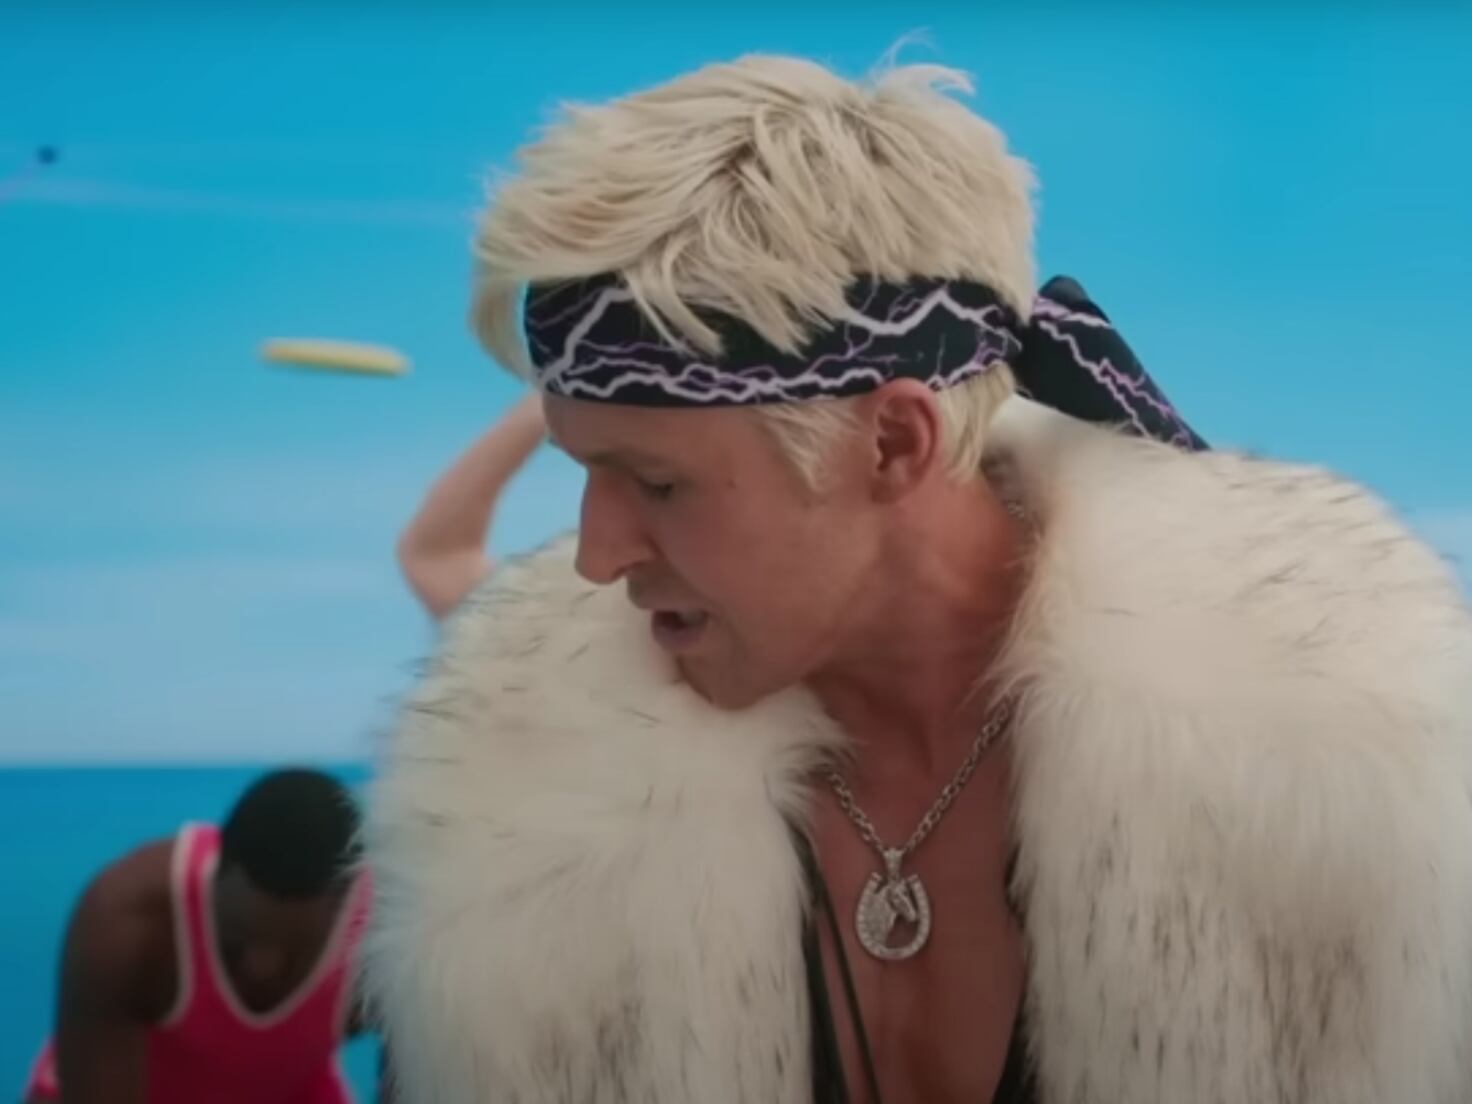 Ryan Gosling Sings 'I'm Just Ken' In New 'Barbie' Teaser: Watch